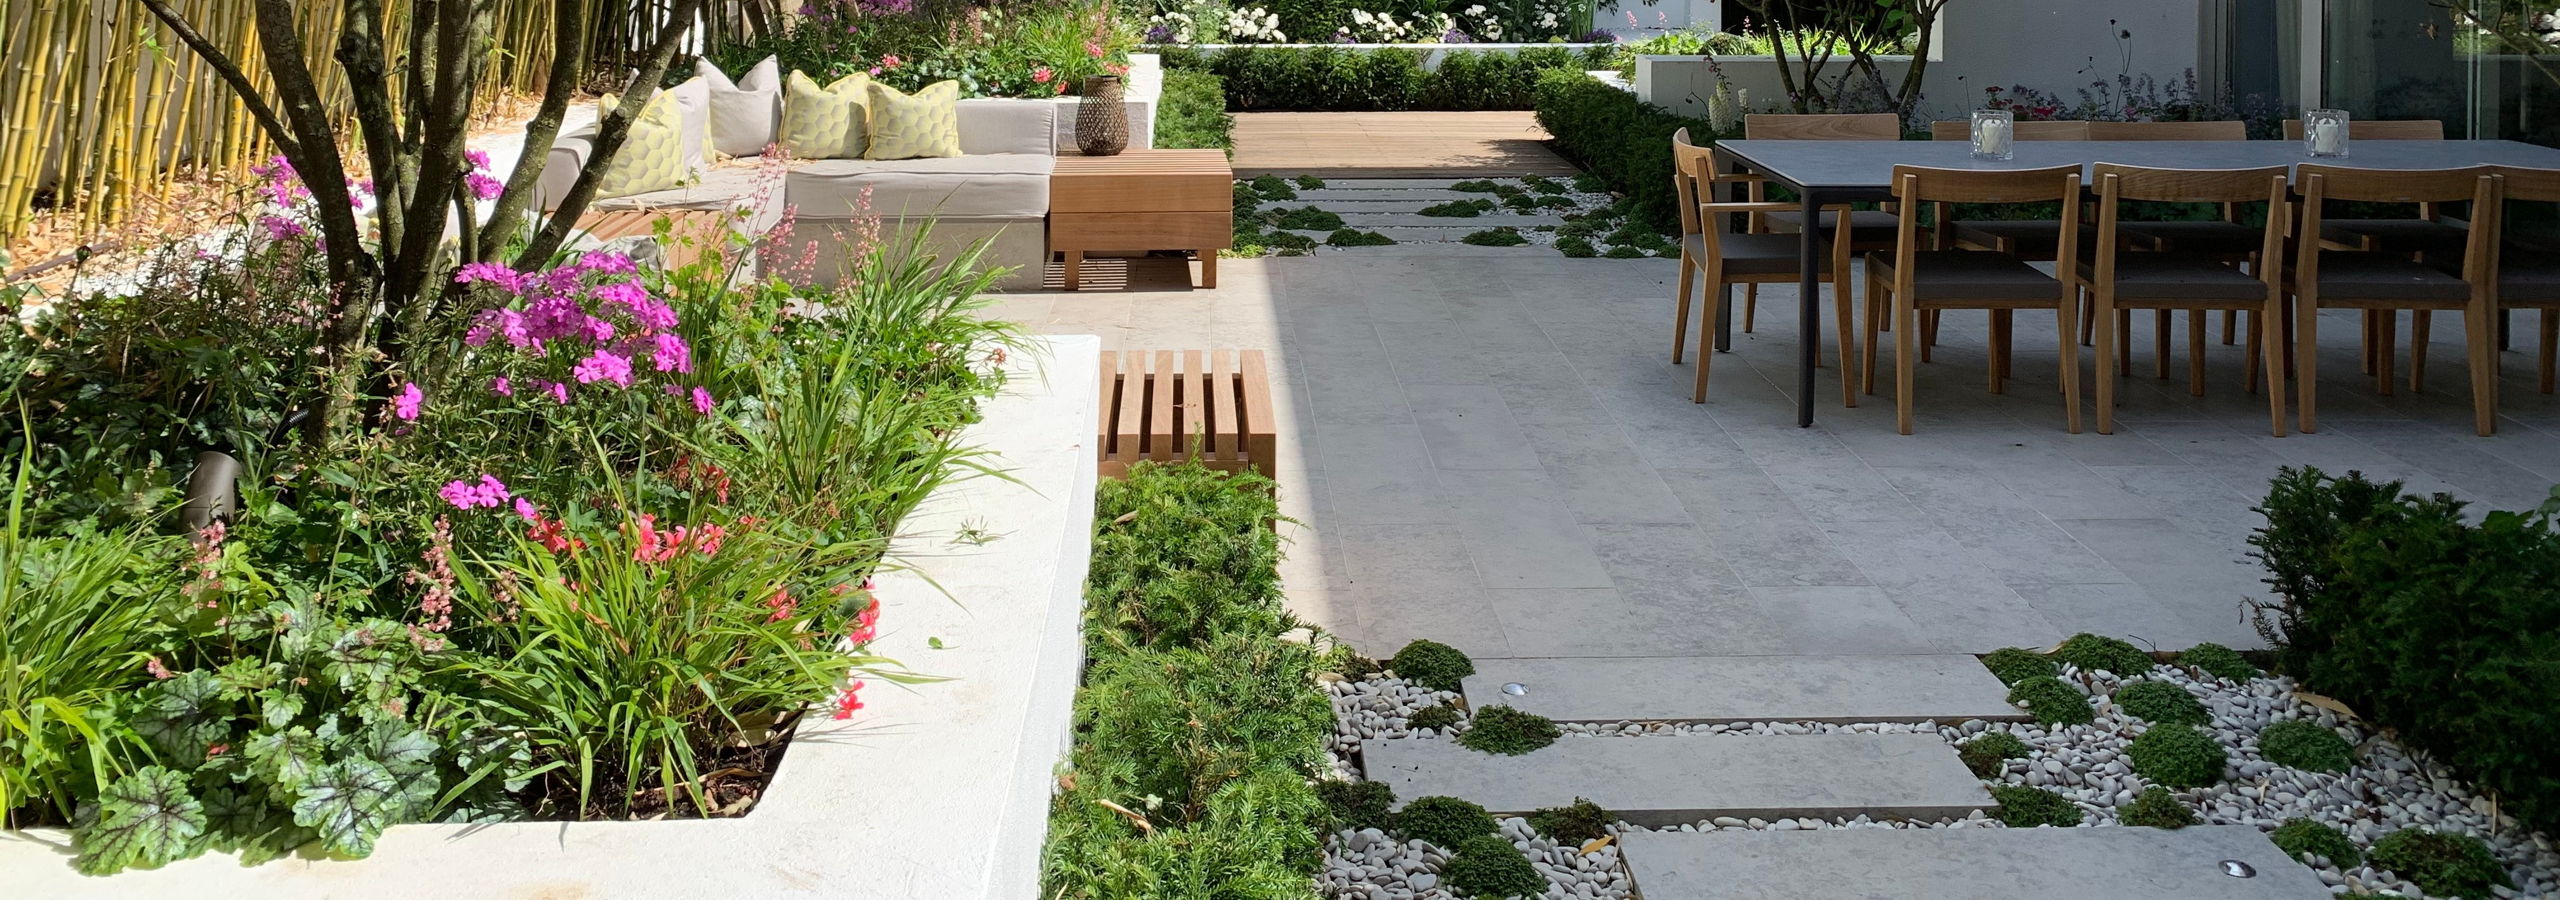 Odborníci na výsadbu exkluzivních zahrad a vysoce kvalitní zahradní projekty. home